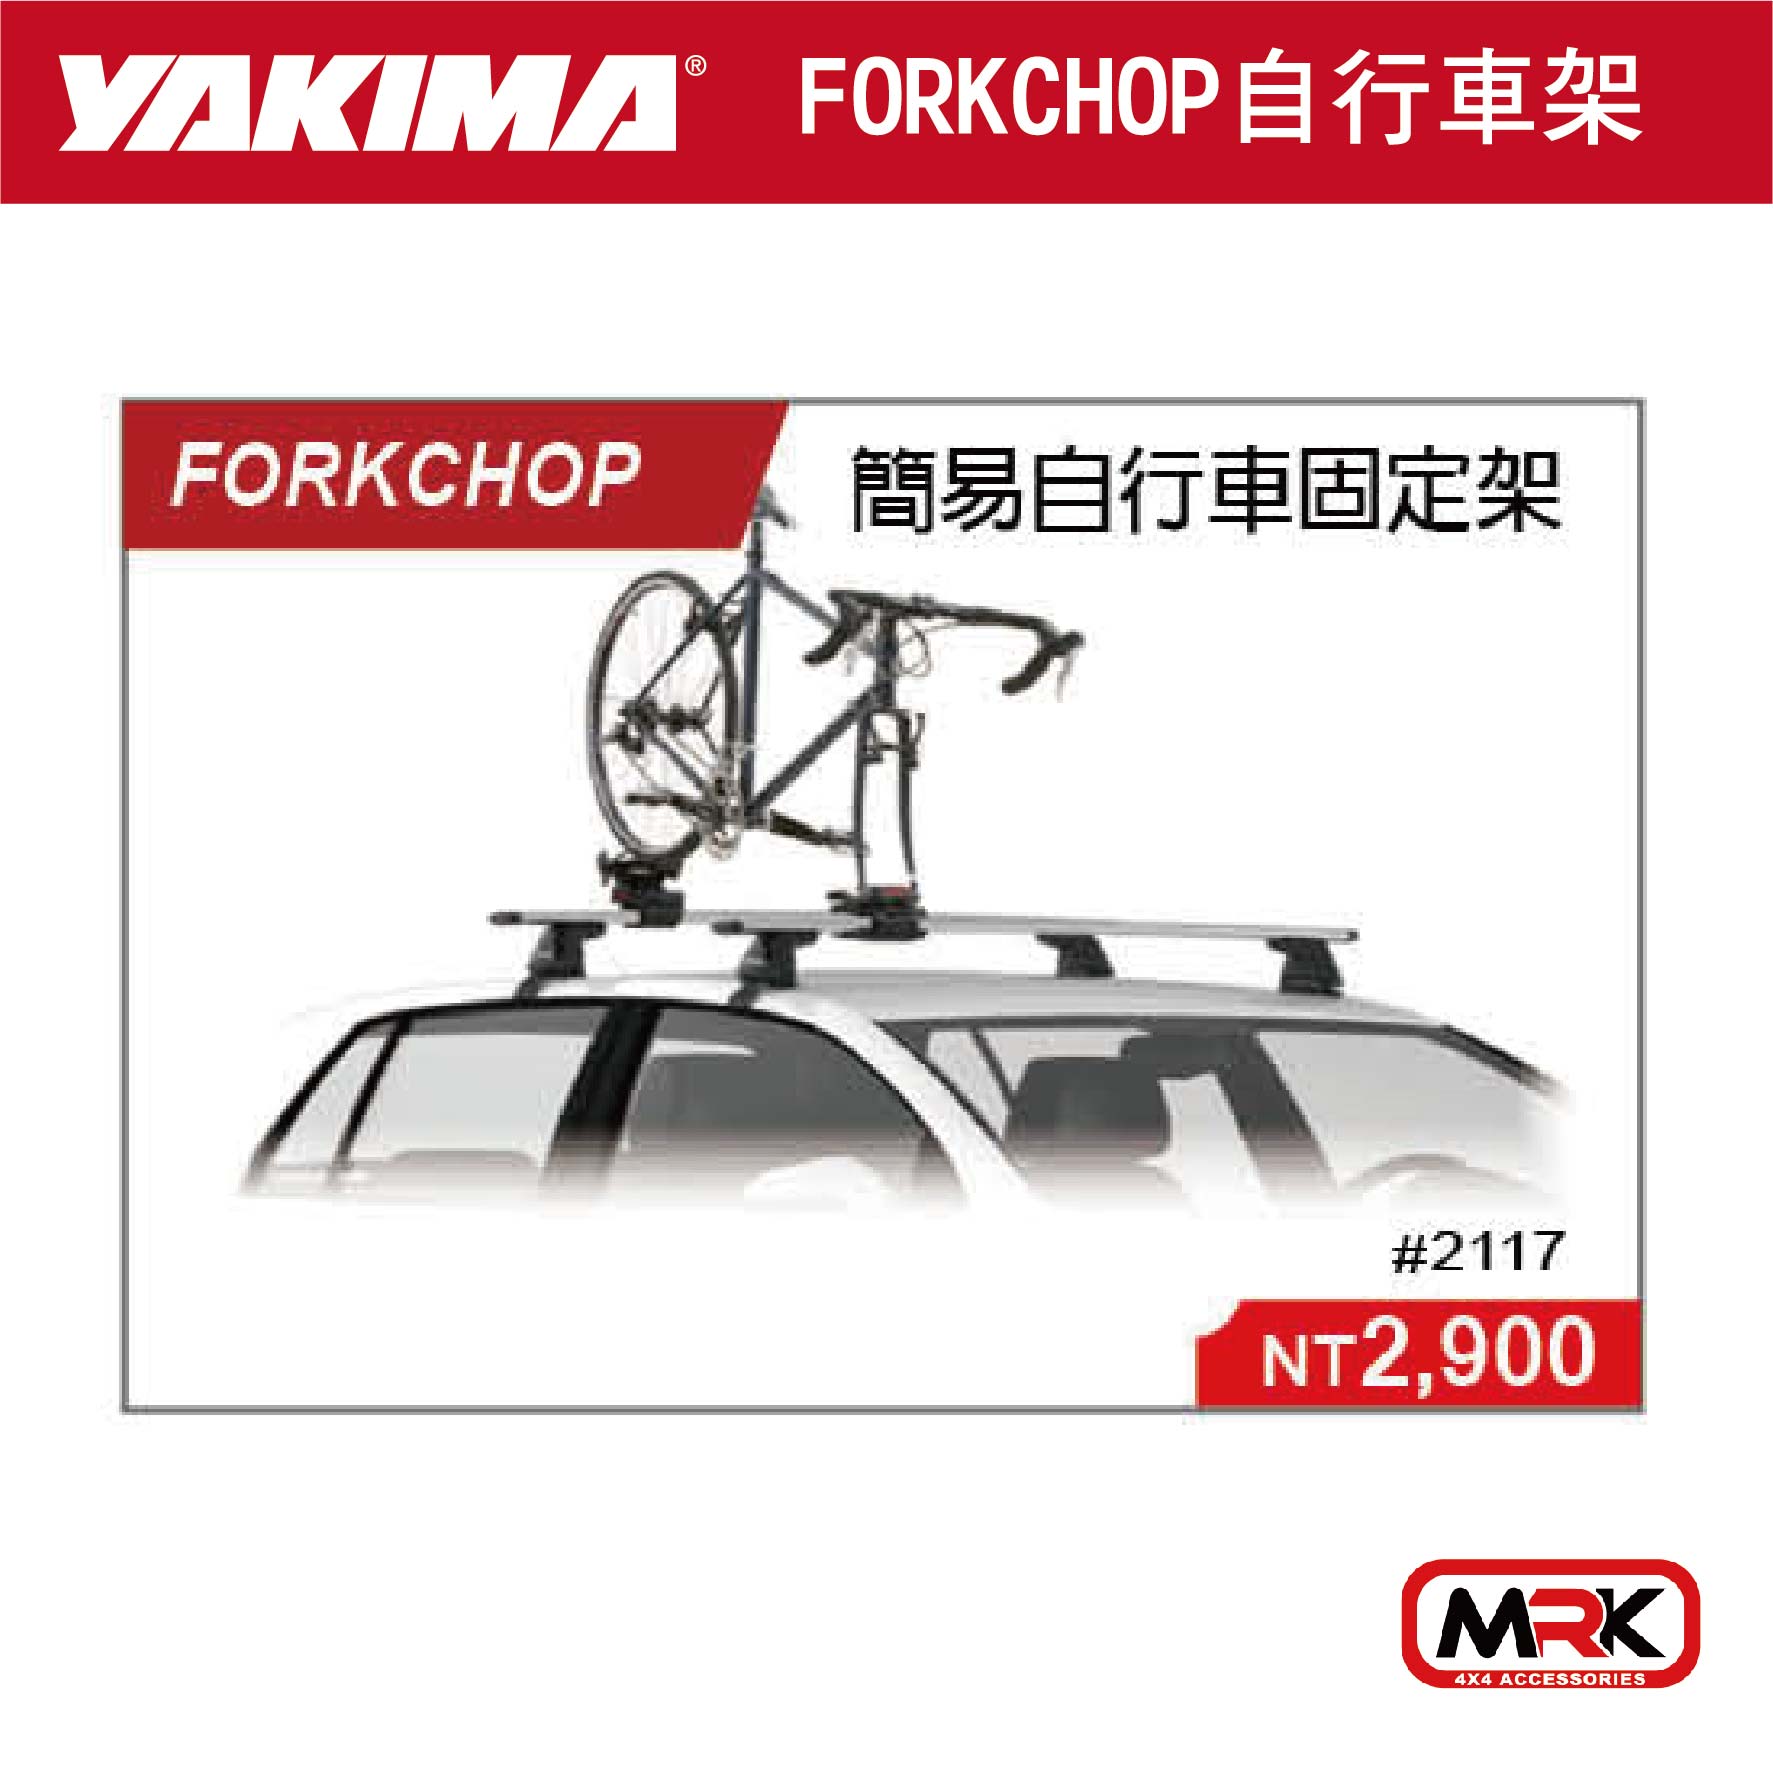 【MRK】YAKIMA FORKCHOP 簡易自行車固定架 自行車攜車架 2117